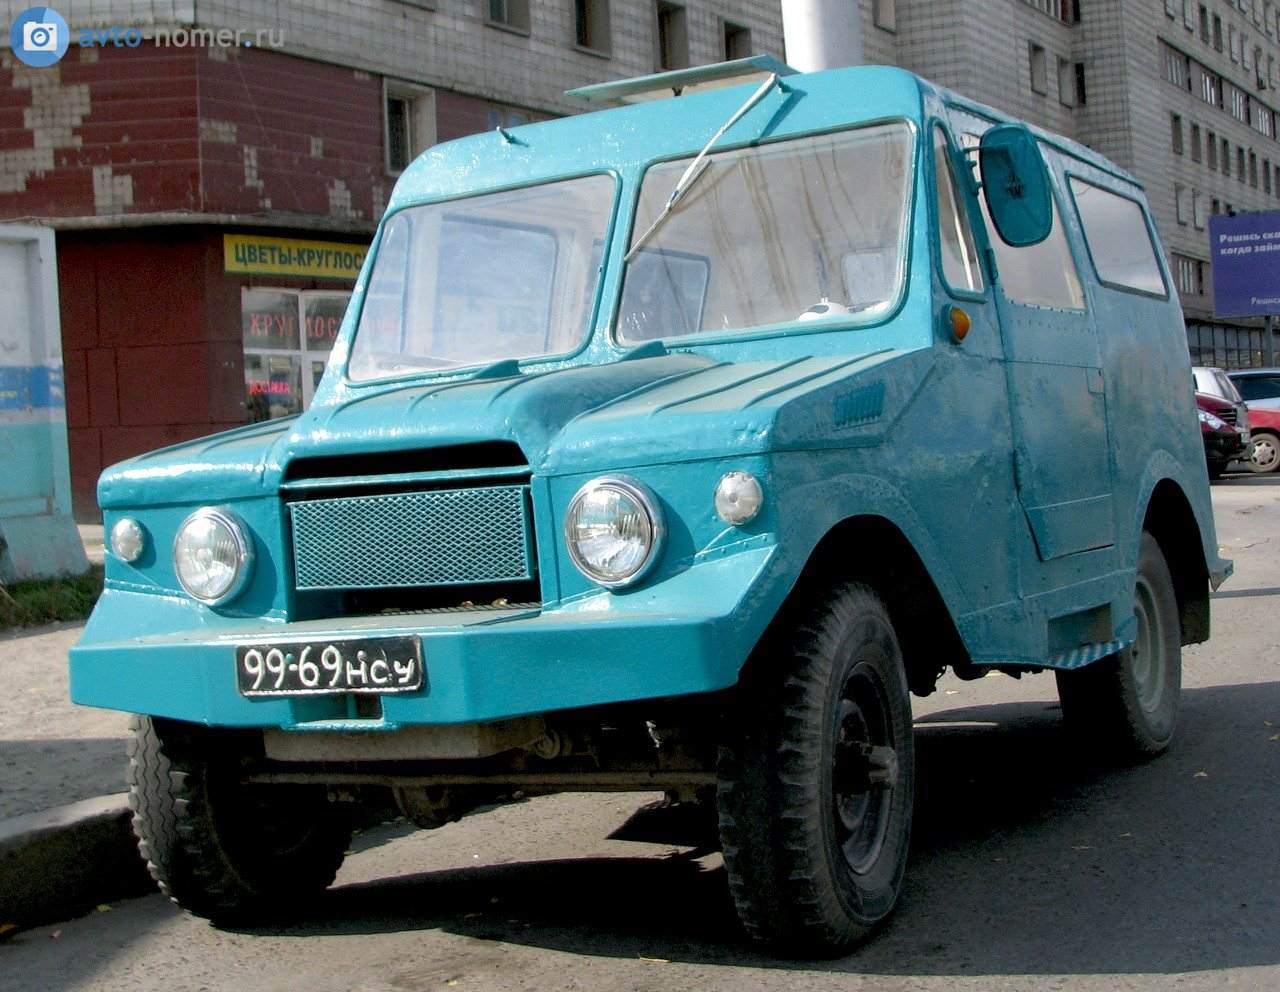 1960(?). САМАВТО. Россия (СССР). Новосибирск. Агрегатная база ГАЗ-69